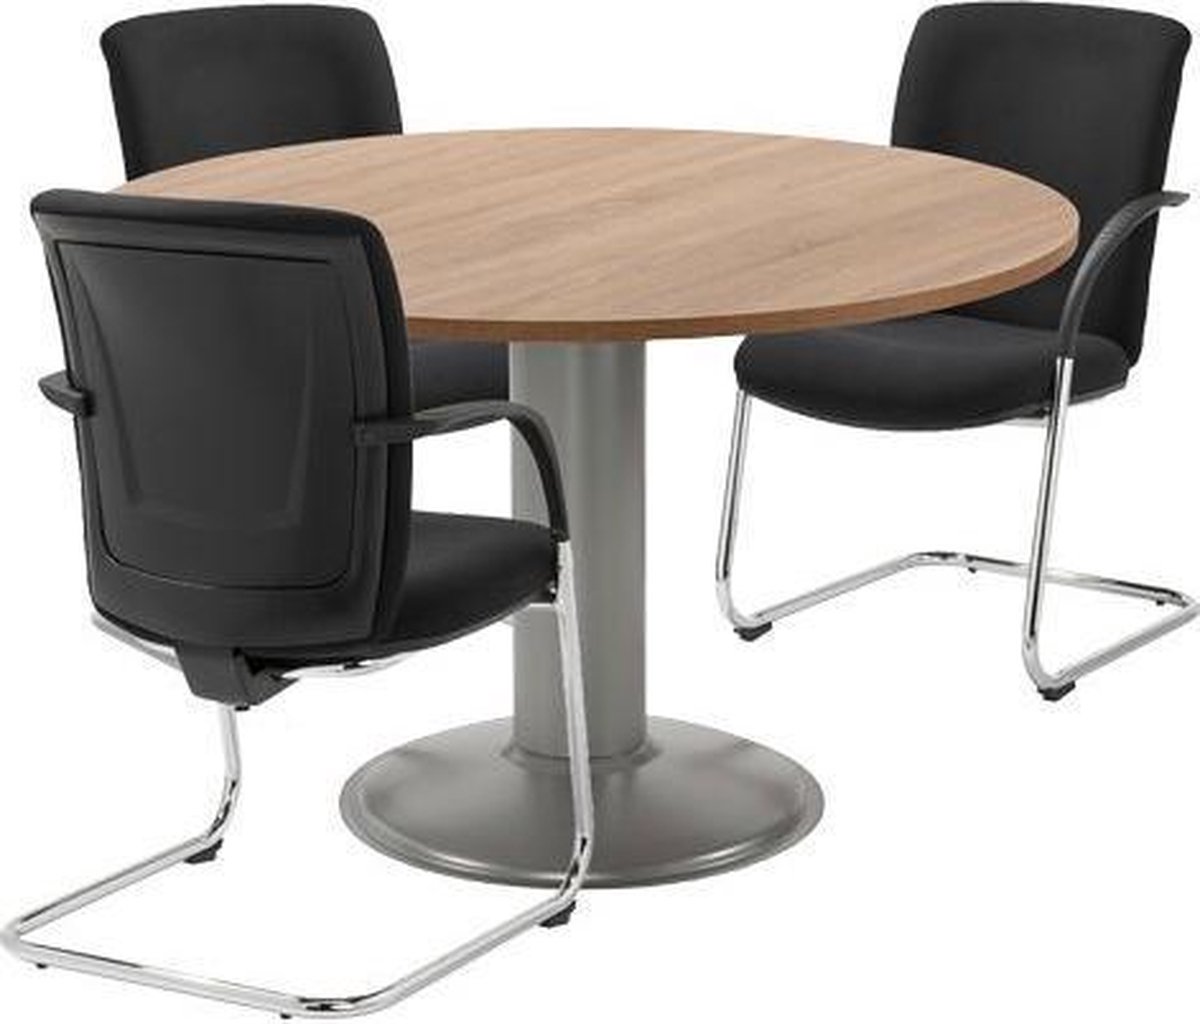 Vergadertafel - Ronde tafel - voor kantoor - 120 cm rond - blad wit - zwart onderstel - eenvoudig zelf te monteren